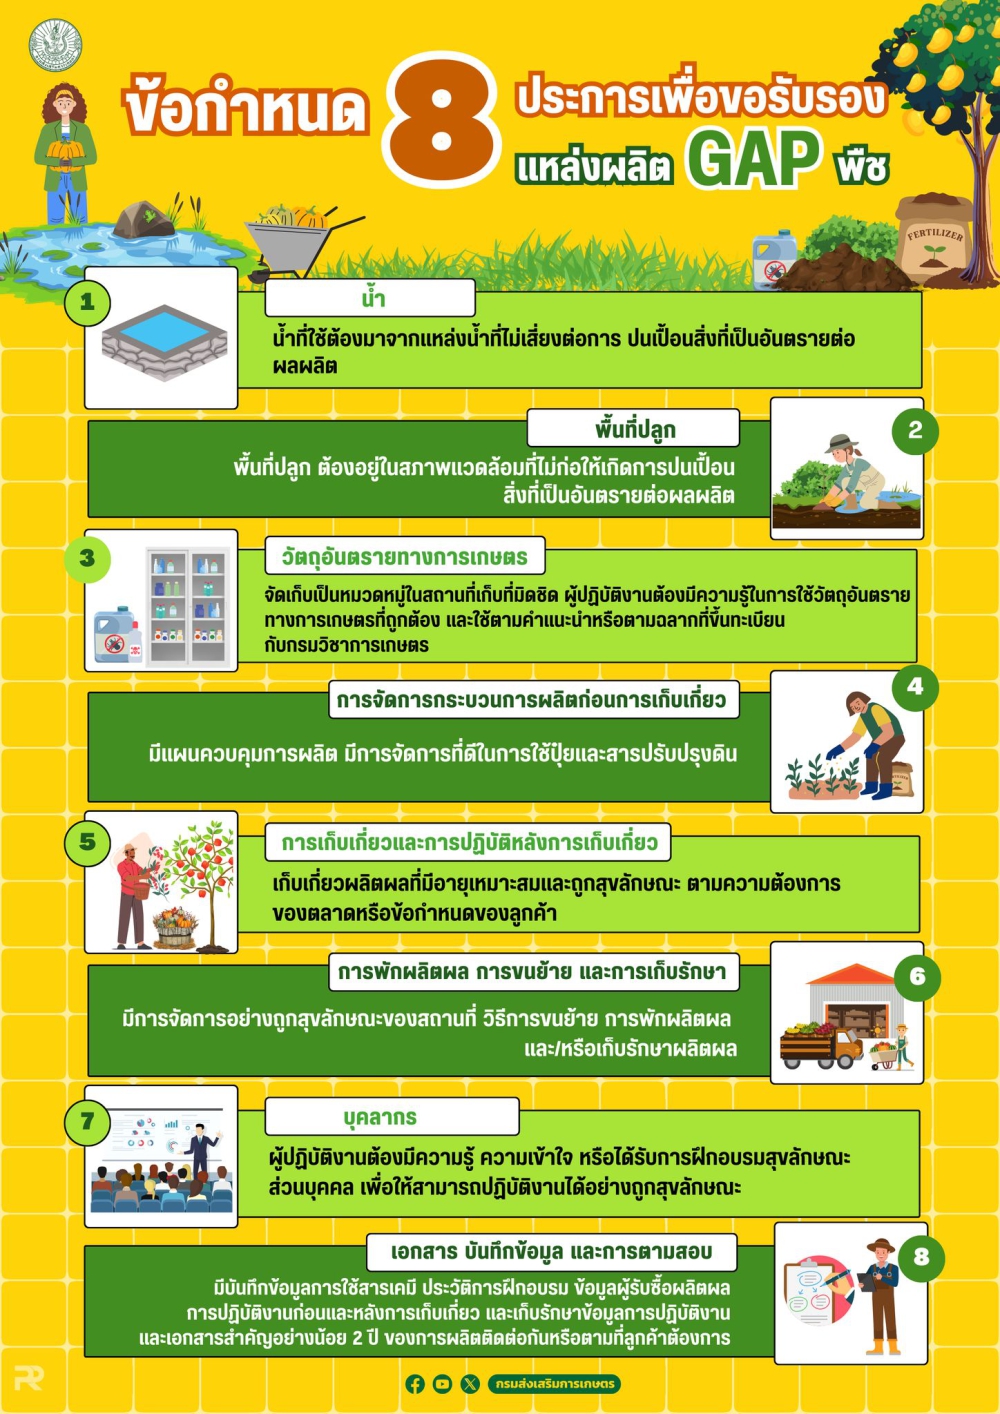 ข้อกำหนด 8 ประการเพื่อขอรับรองแหล่งผลิต GAP พืช